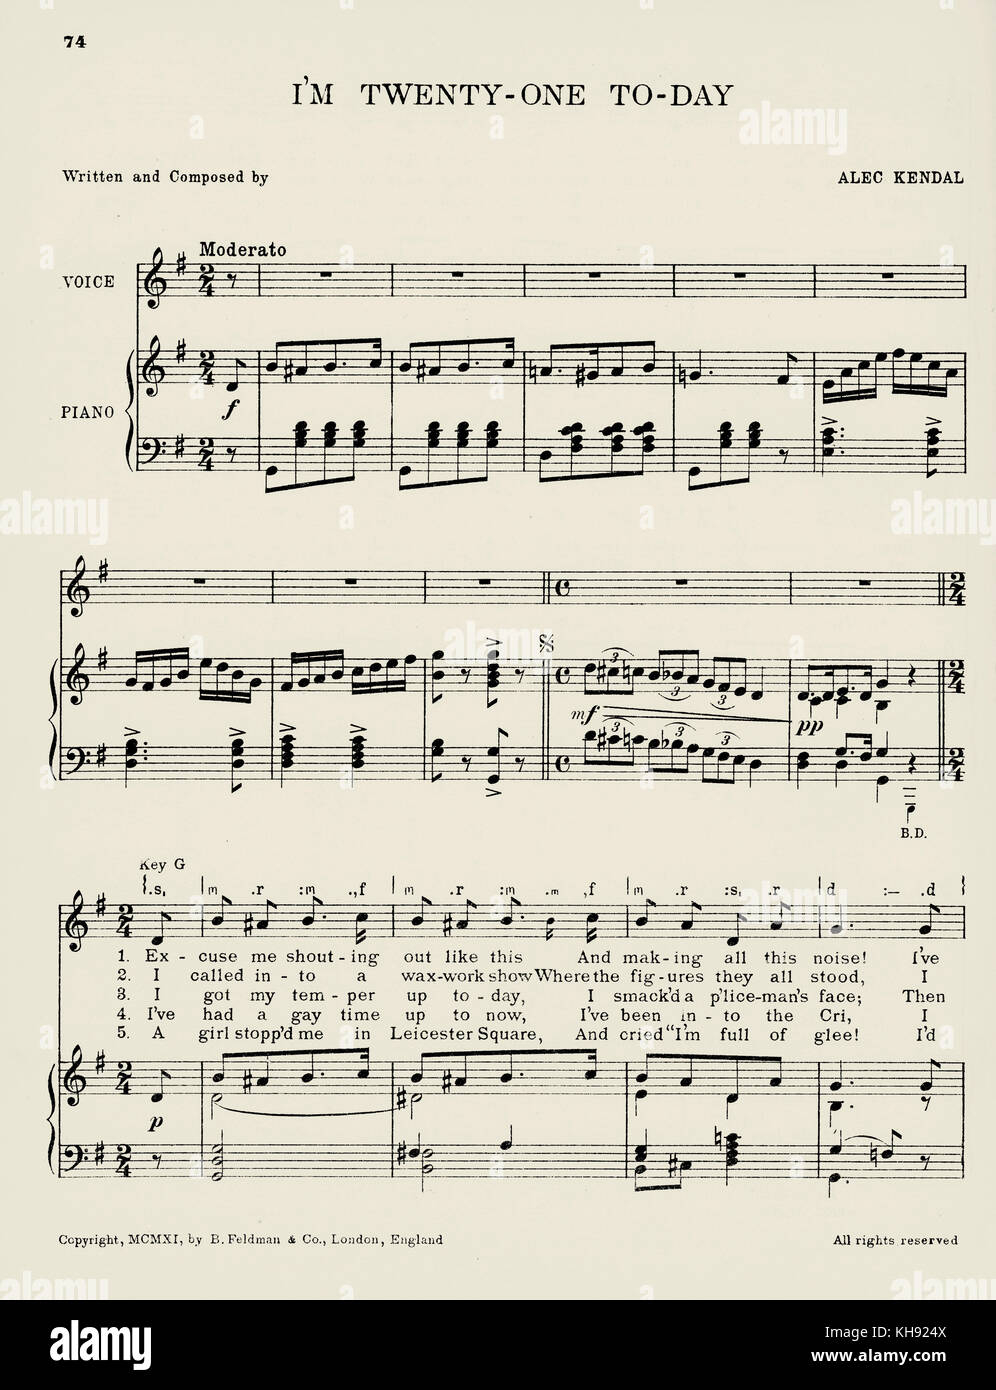 'Je suis aujourd'hui 21' - chanson partition écrite et composée par Alec Kendal. 1911. Populaire au cours de la Première Guerre mondiale. Page 1 de 3. Banque D'Images